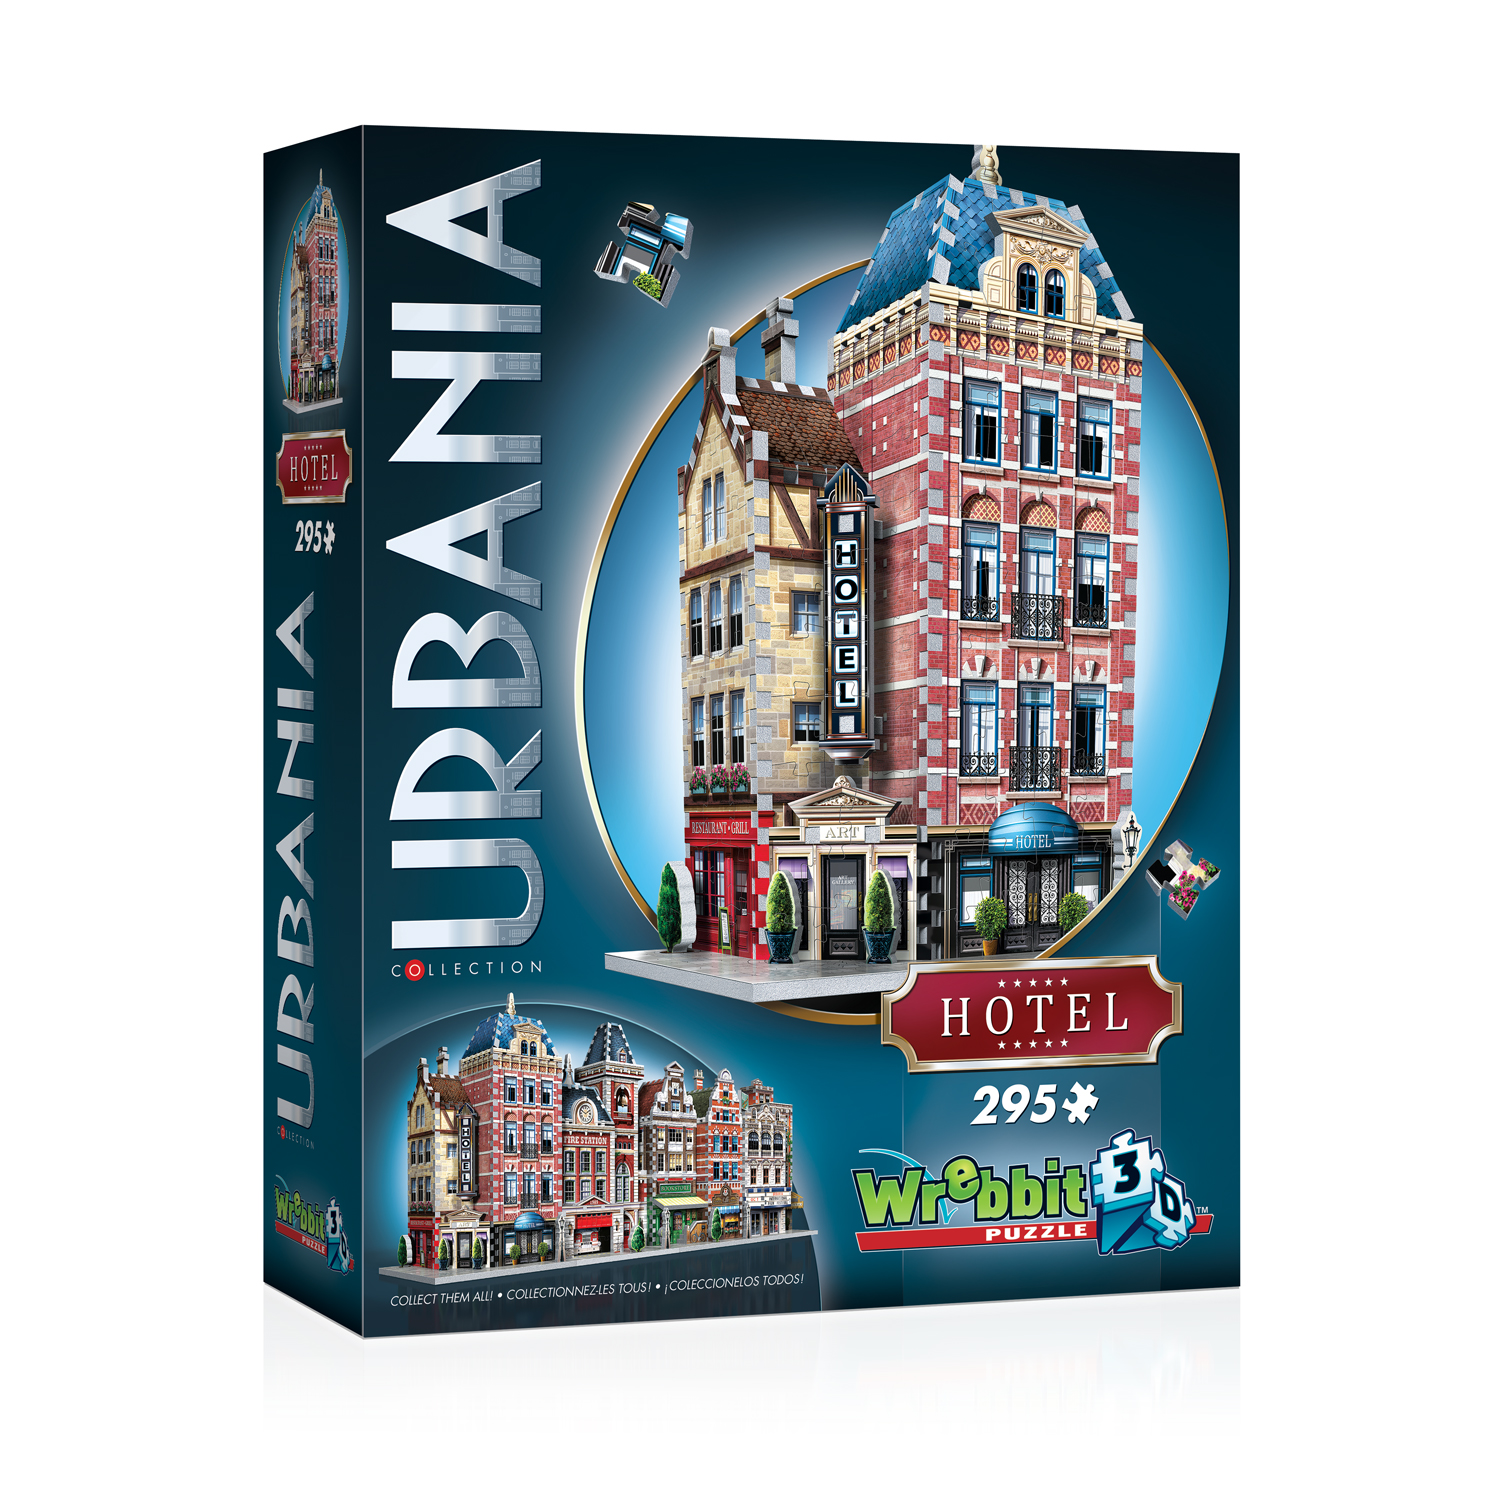 Urbania Baukunst Wrebbit Hotel Stadthäuser 3D Puzzle 295 Teile Haus 